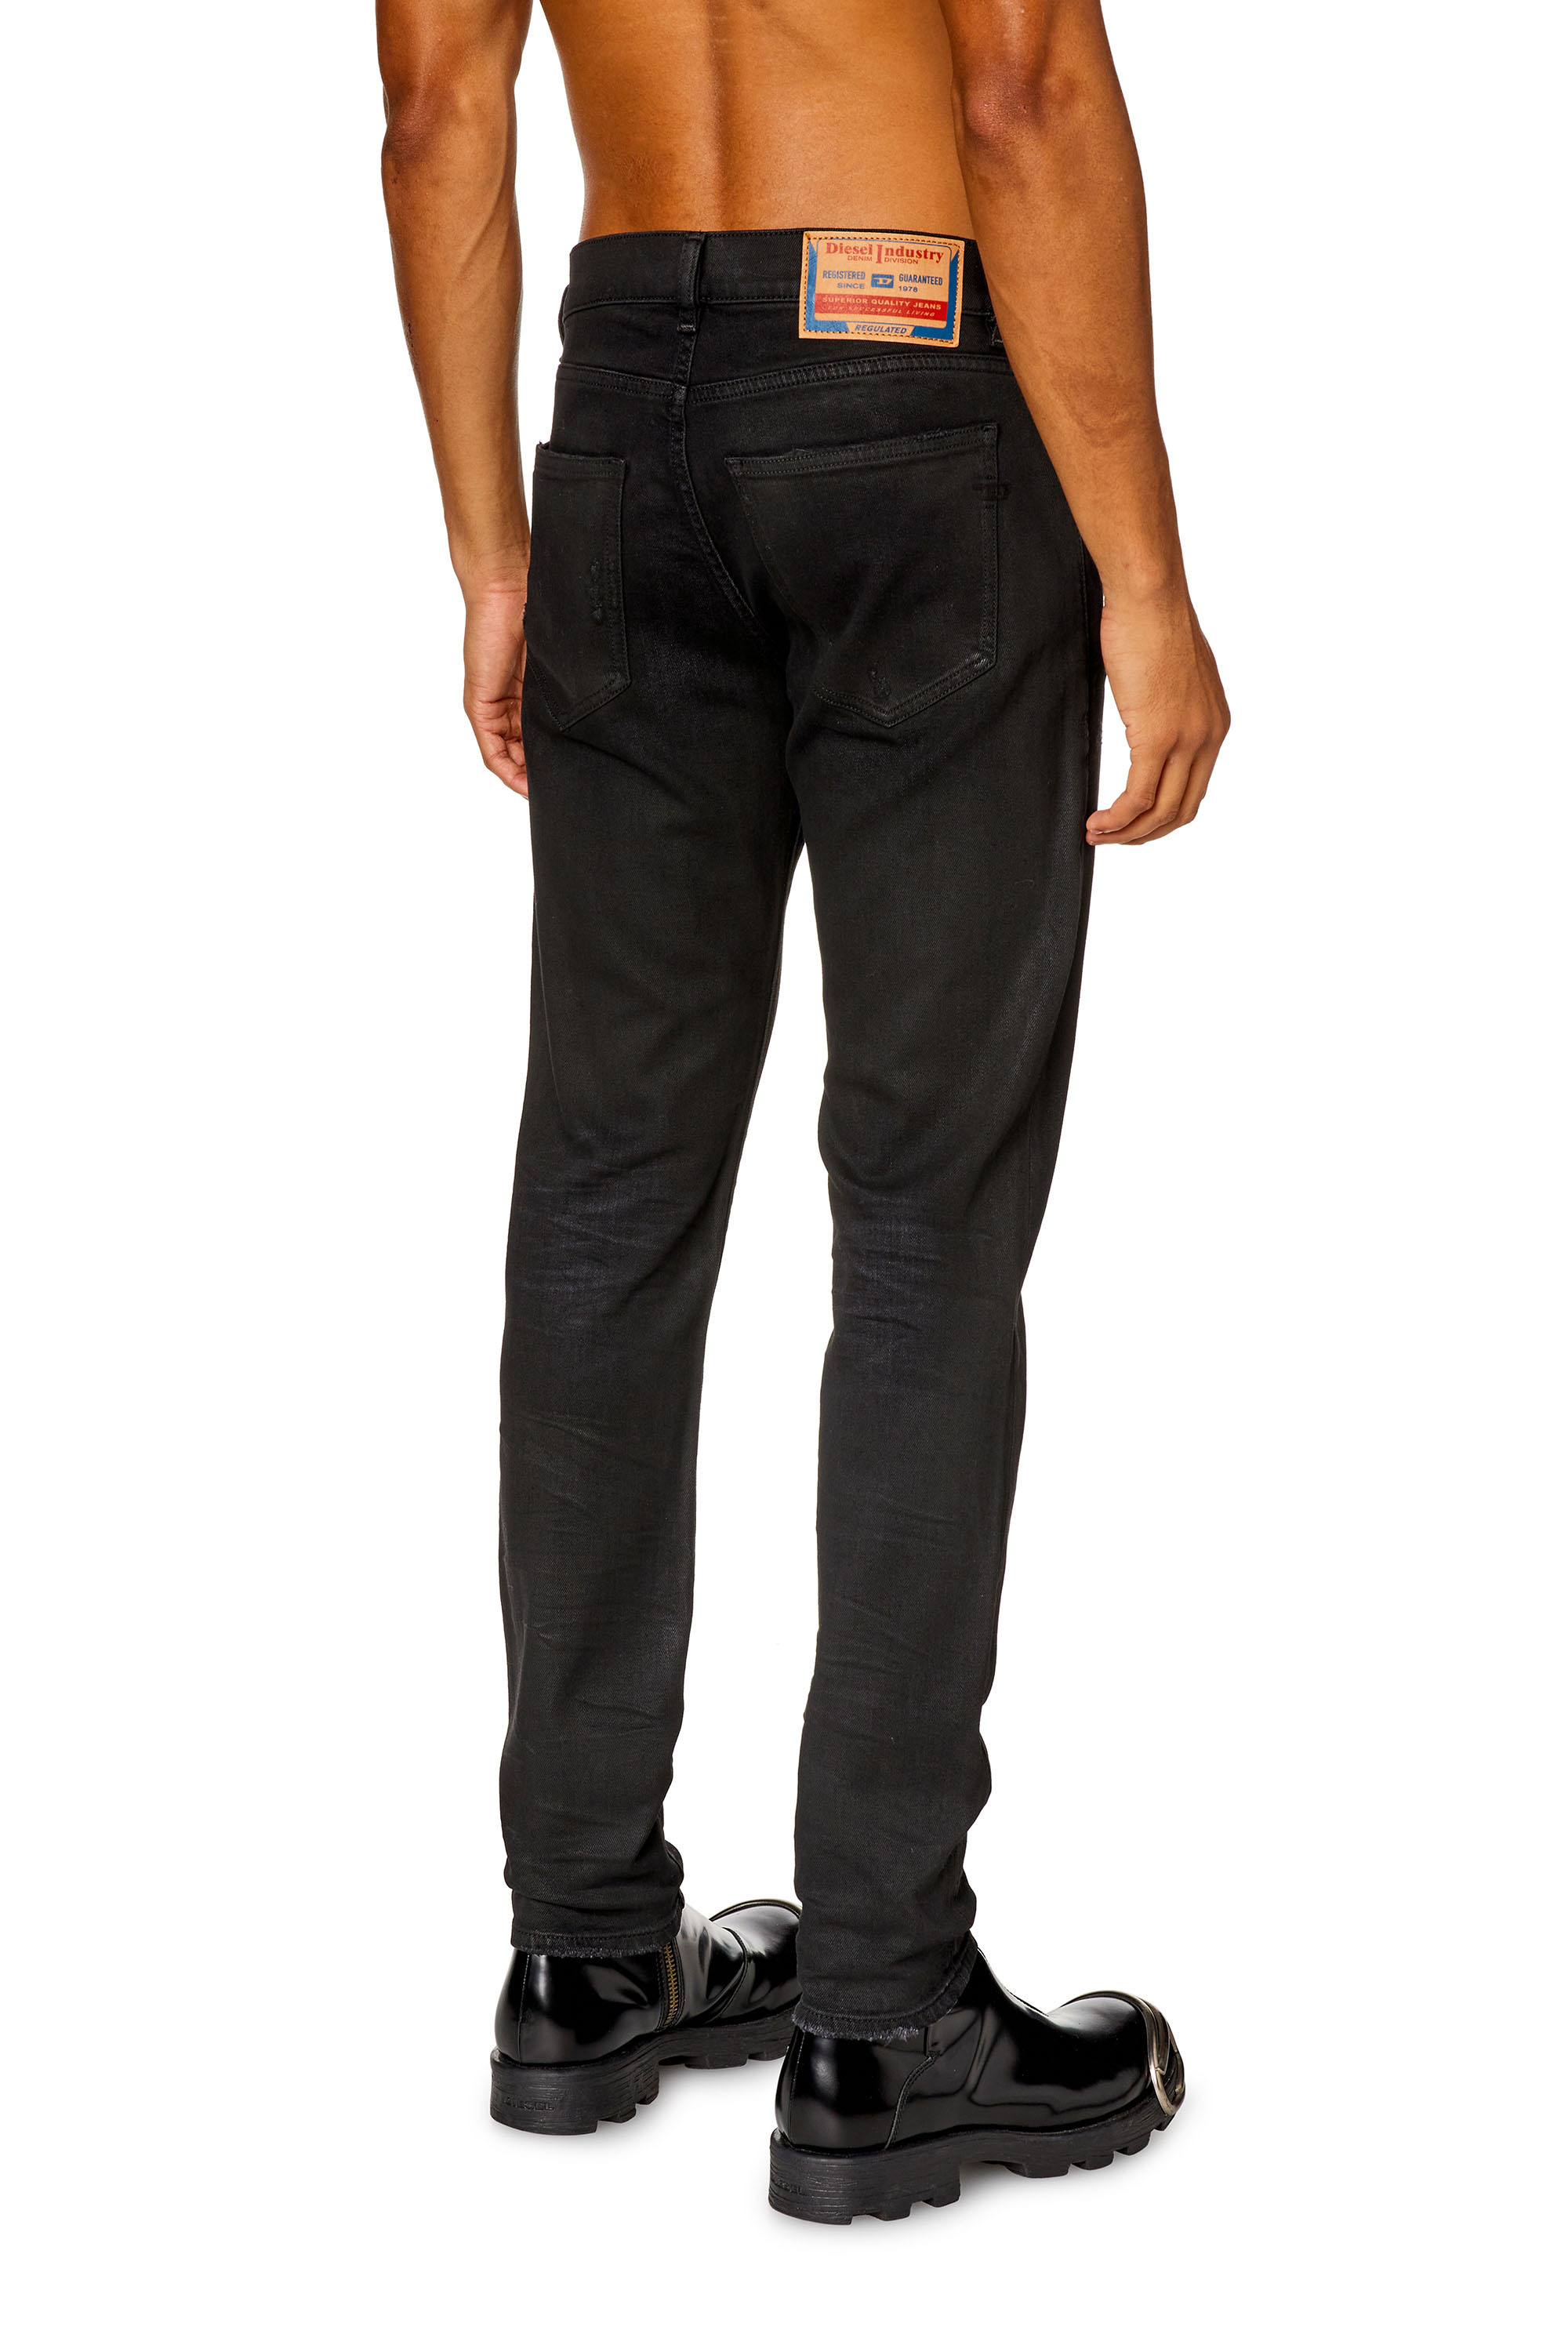 Diesel - Slim Jeans 2019 D-Strukt 09I19, Black/Dark grey - Image 3